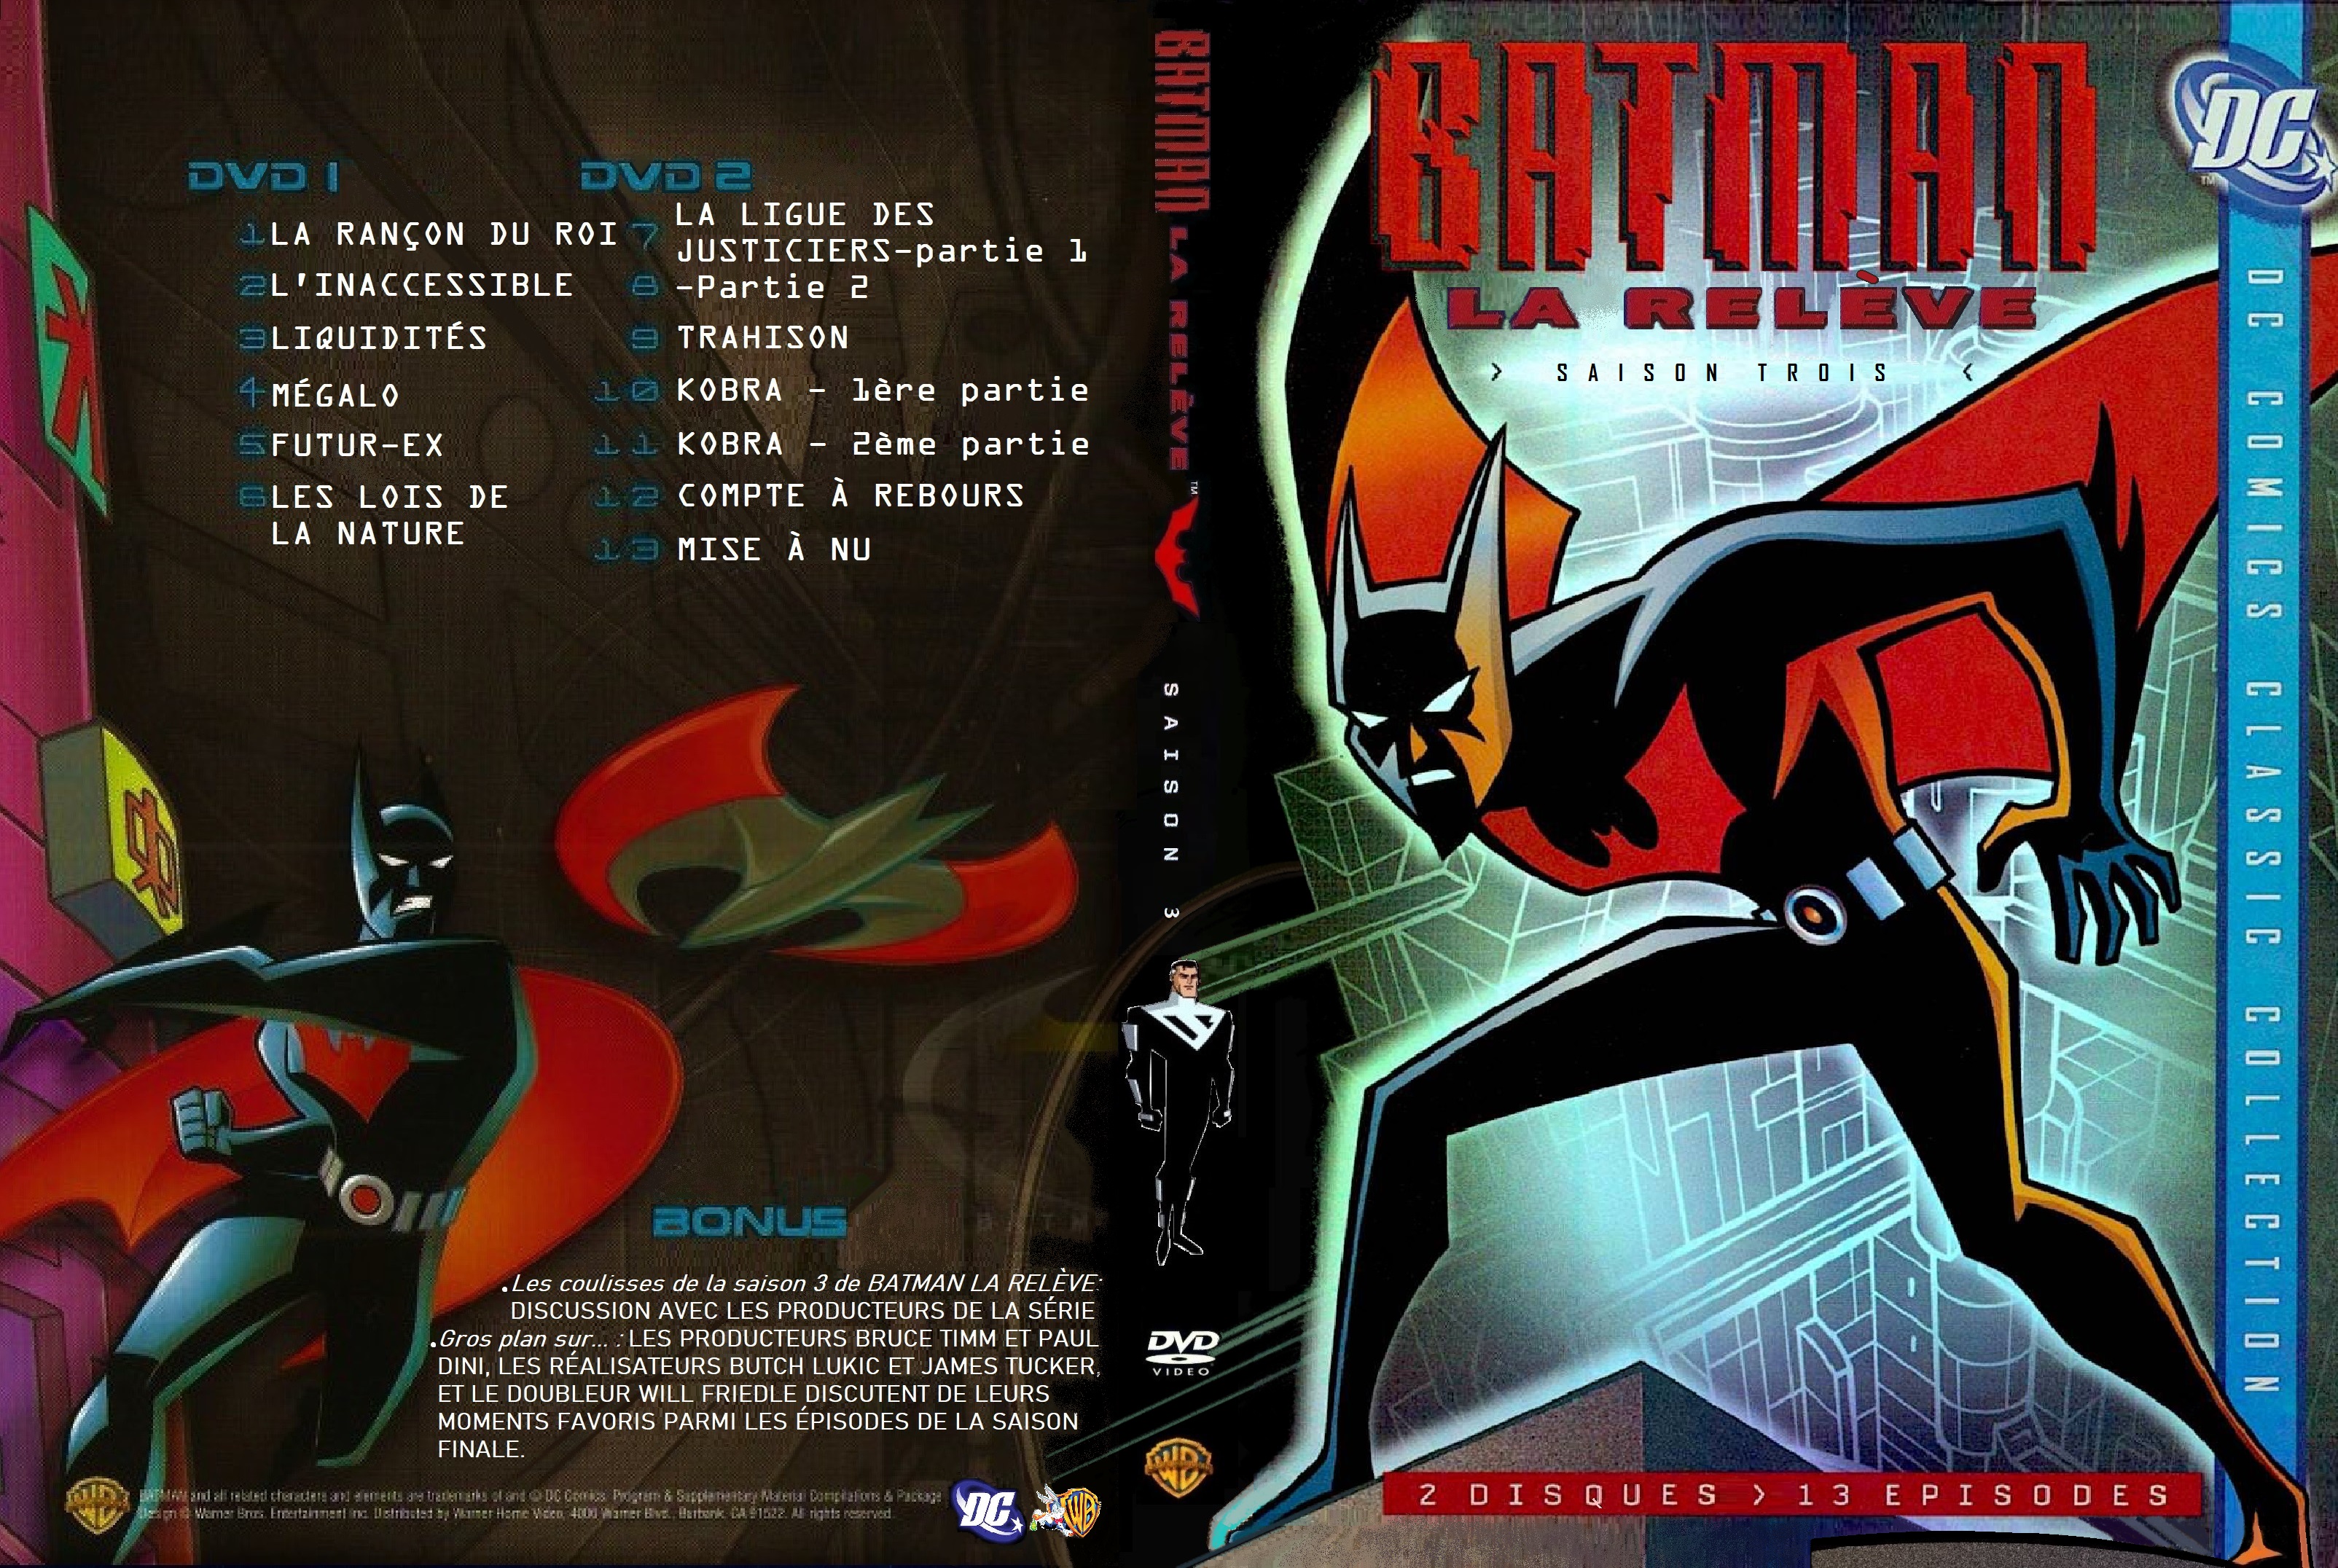 Jaquette DVD Batman la releve Saison 3 custom